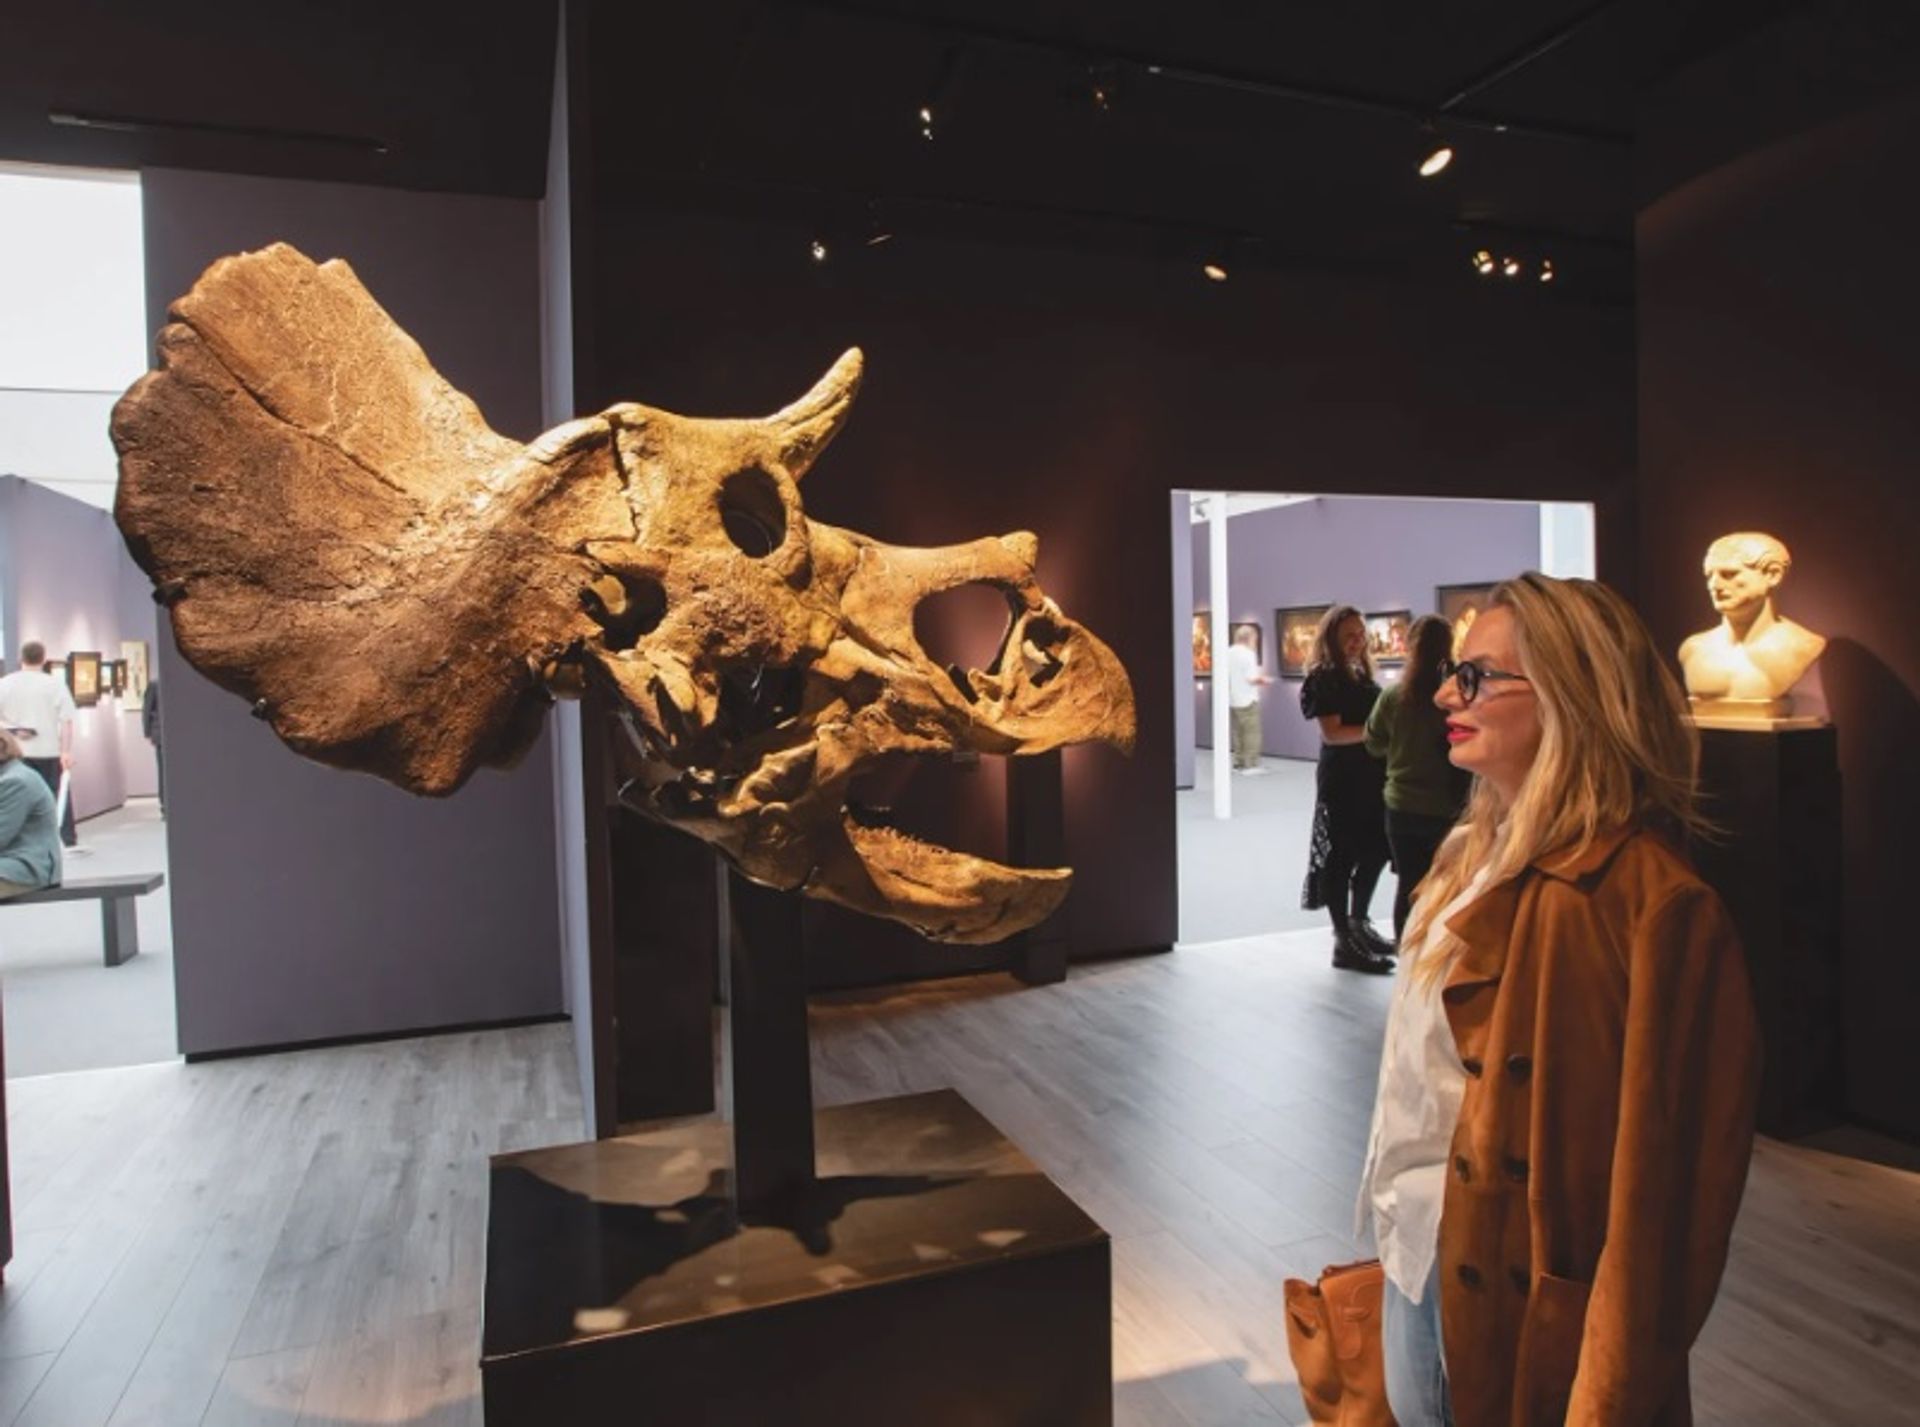 גולגולת מאובנת של טריצֶרָטוֹפּס צעיר, המוצגת ב"גלריה דיוויד אהרון", נמכרה מתחת למיליון ליש"ט. השלד המאובן הראשון של פרייז מאסטרס, תנין בן 50 מיליון שנה, נמכר ב-1.2 מיליון ליש"ט ב-2019 על ידי ArtAncient

דיוויד אוונס